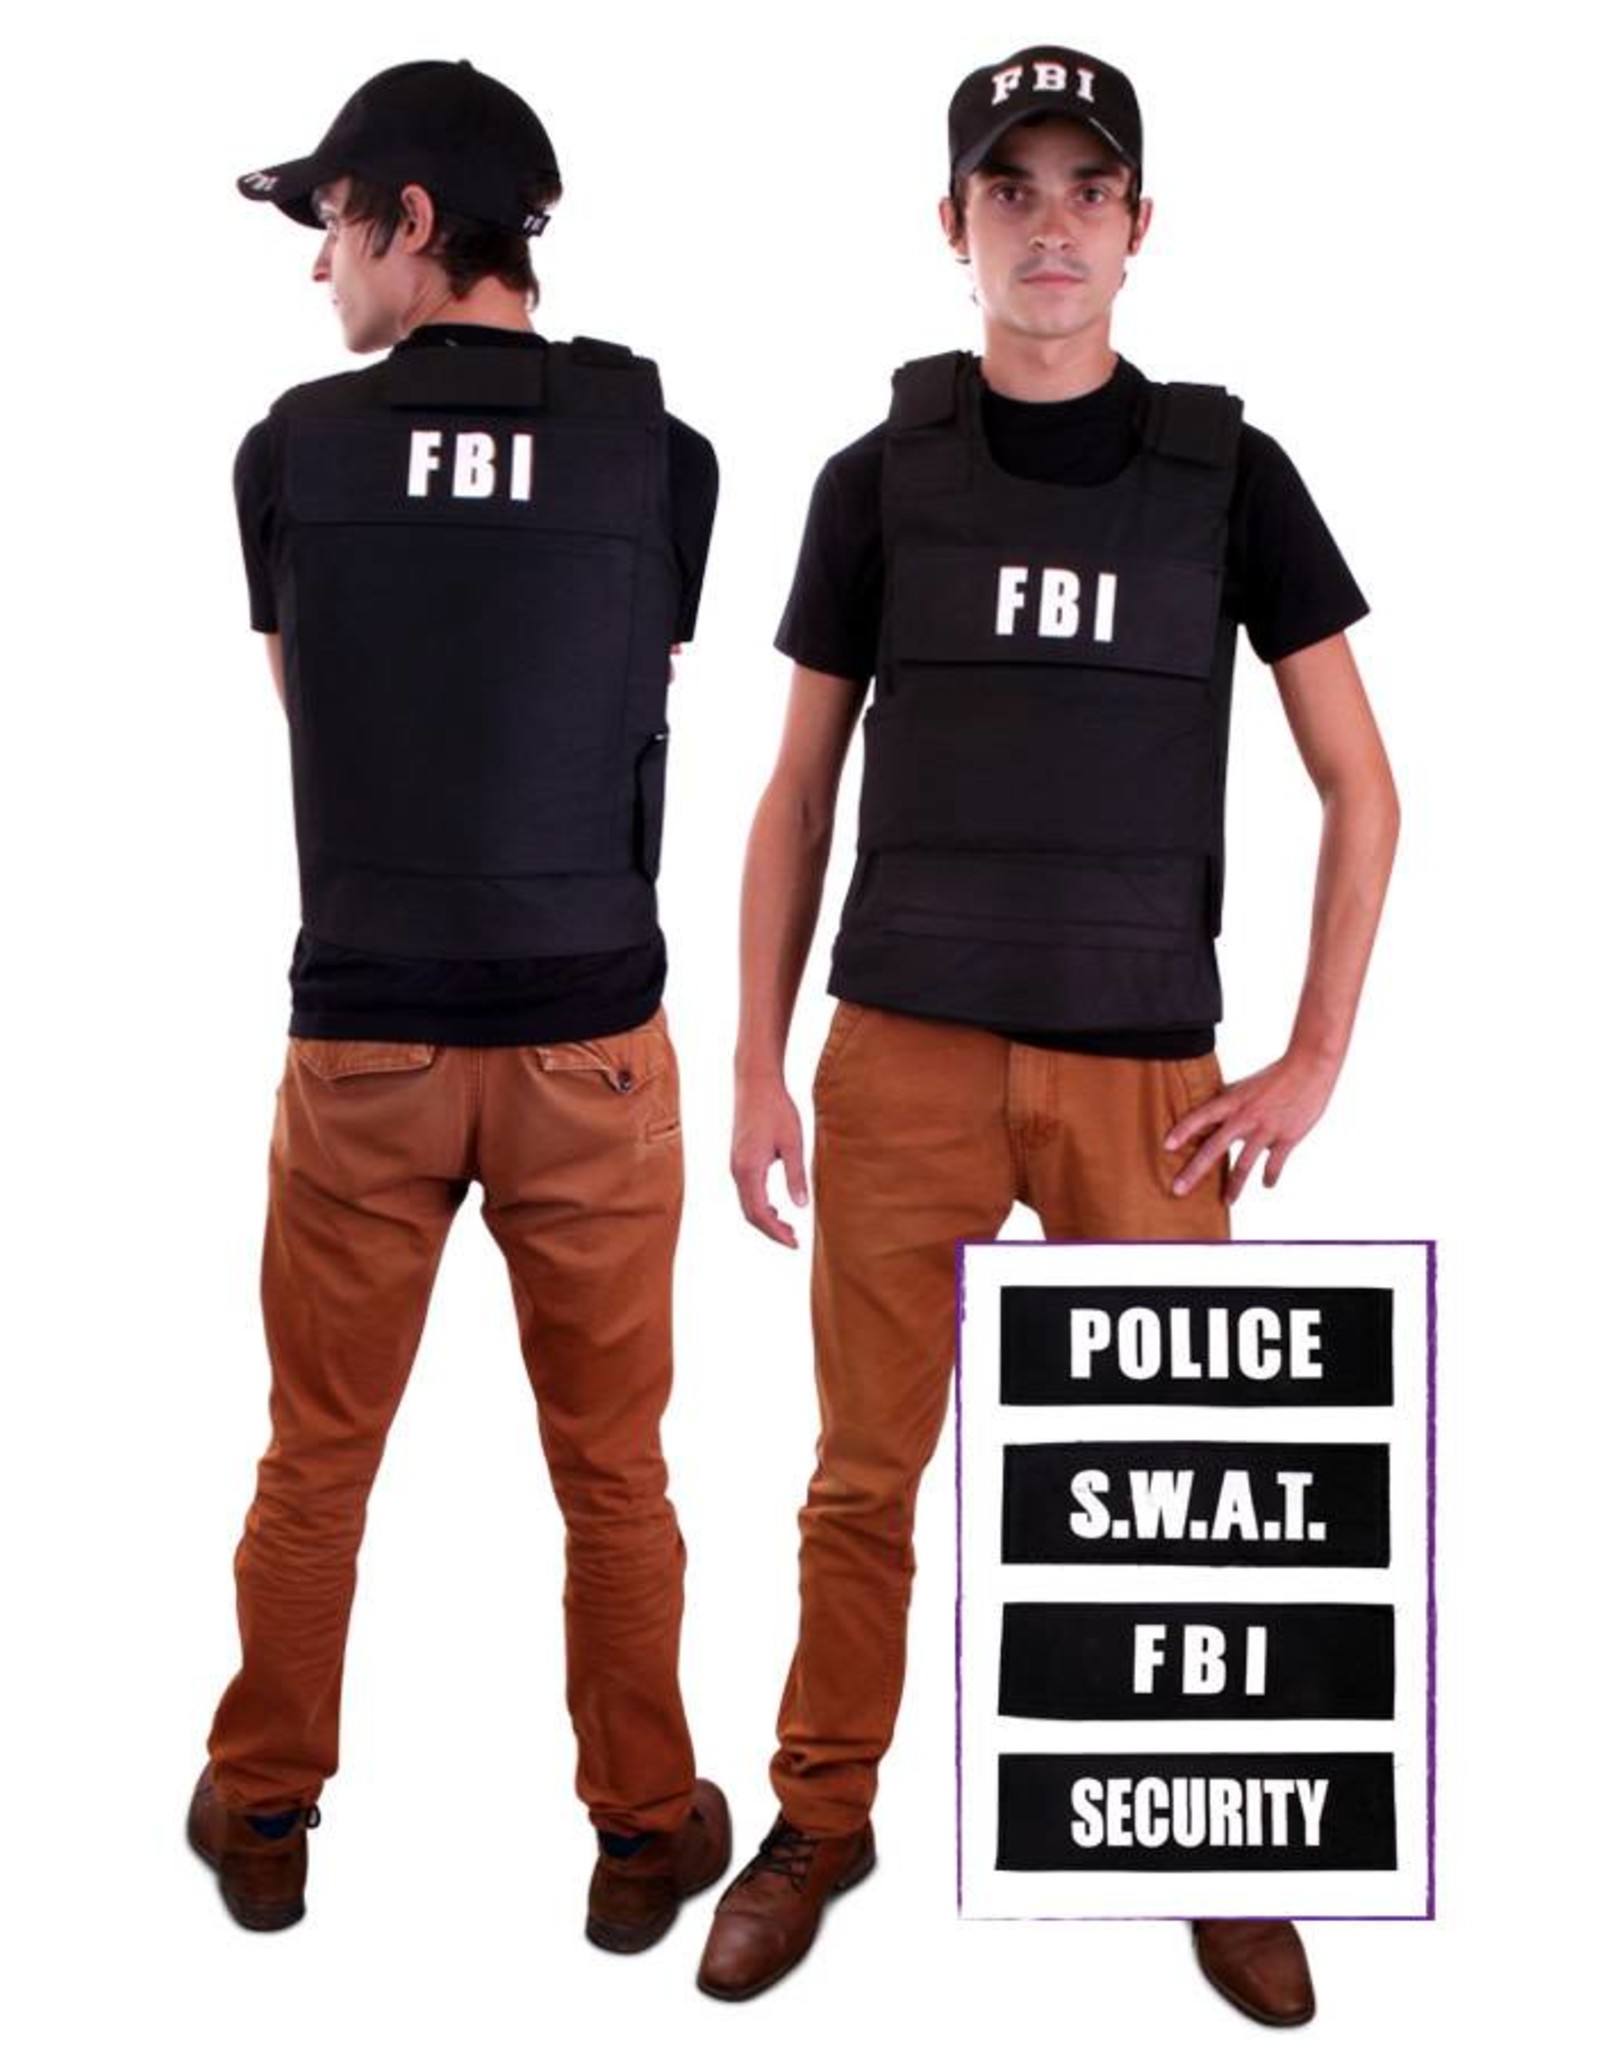 Kogelvrij vest + 4 badges (FBI, Security, Police, SWAT) one size